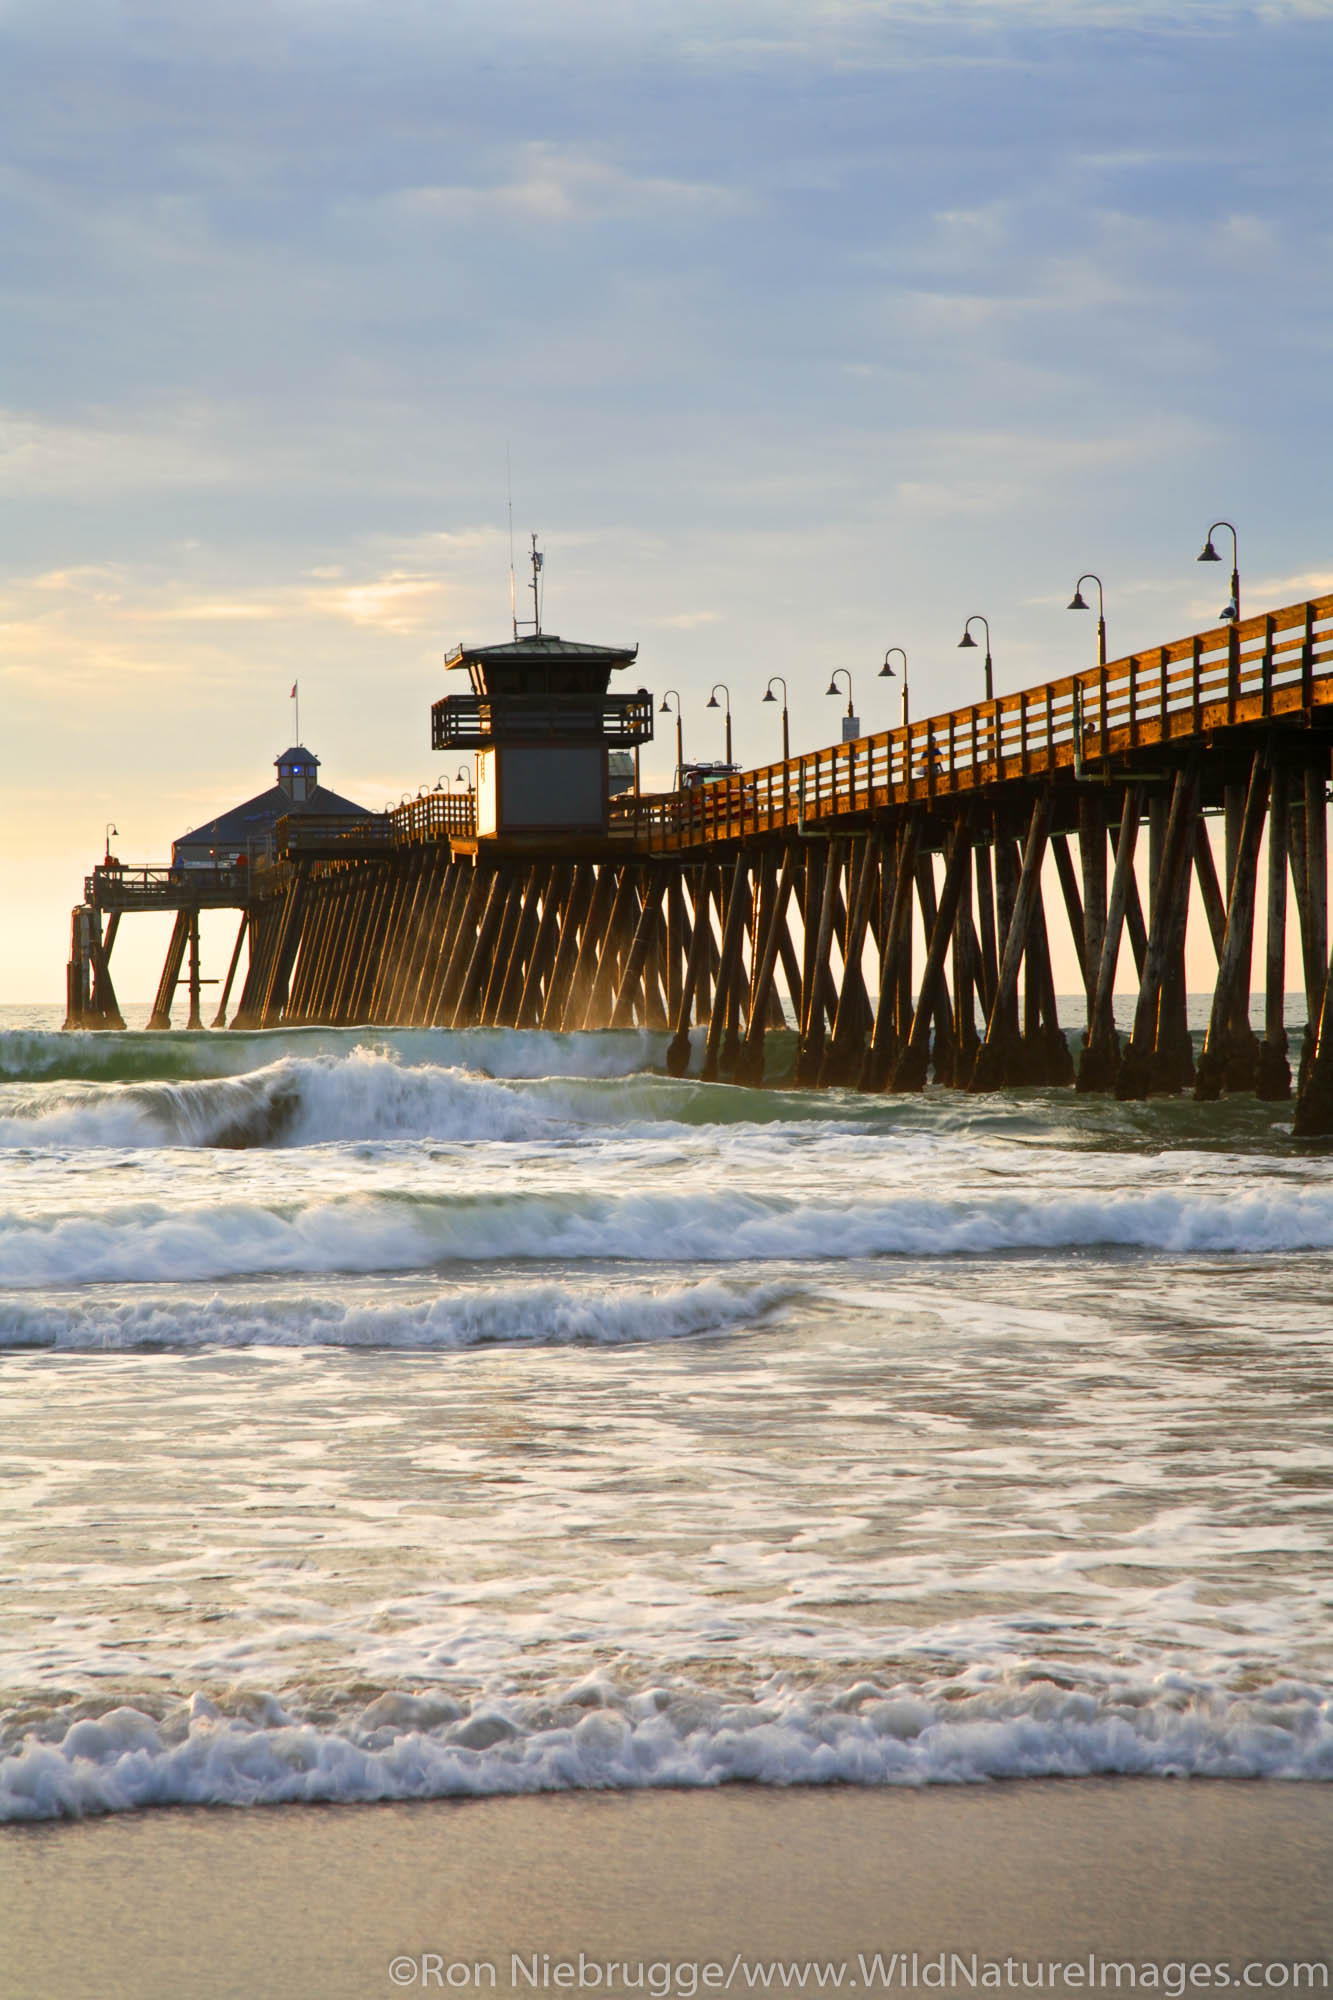 Imperial Beach Municipal Pier, San Diego County, California.